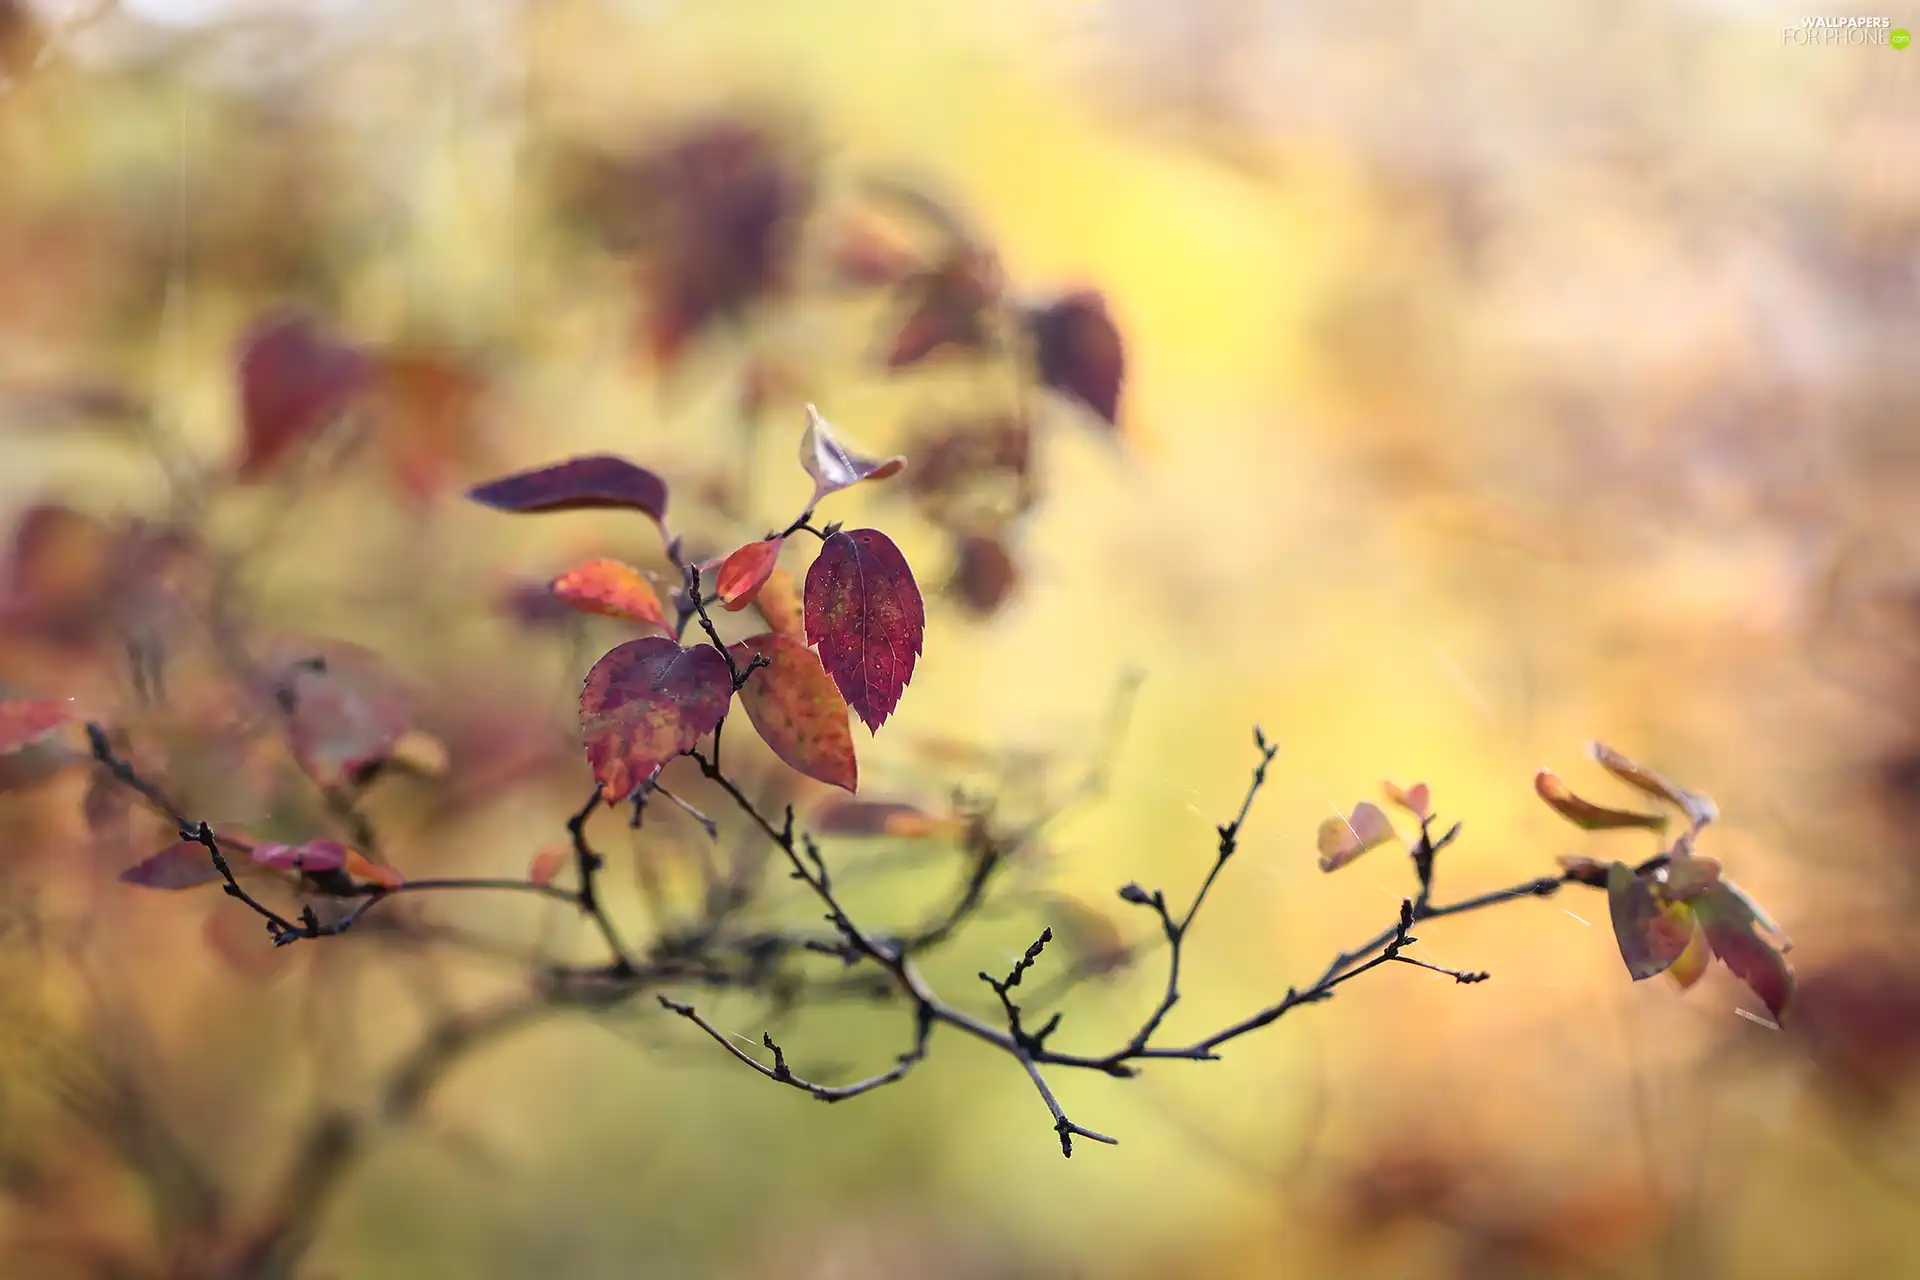 twig, Leaf, blurry background, Autumn